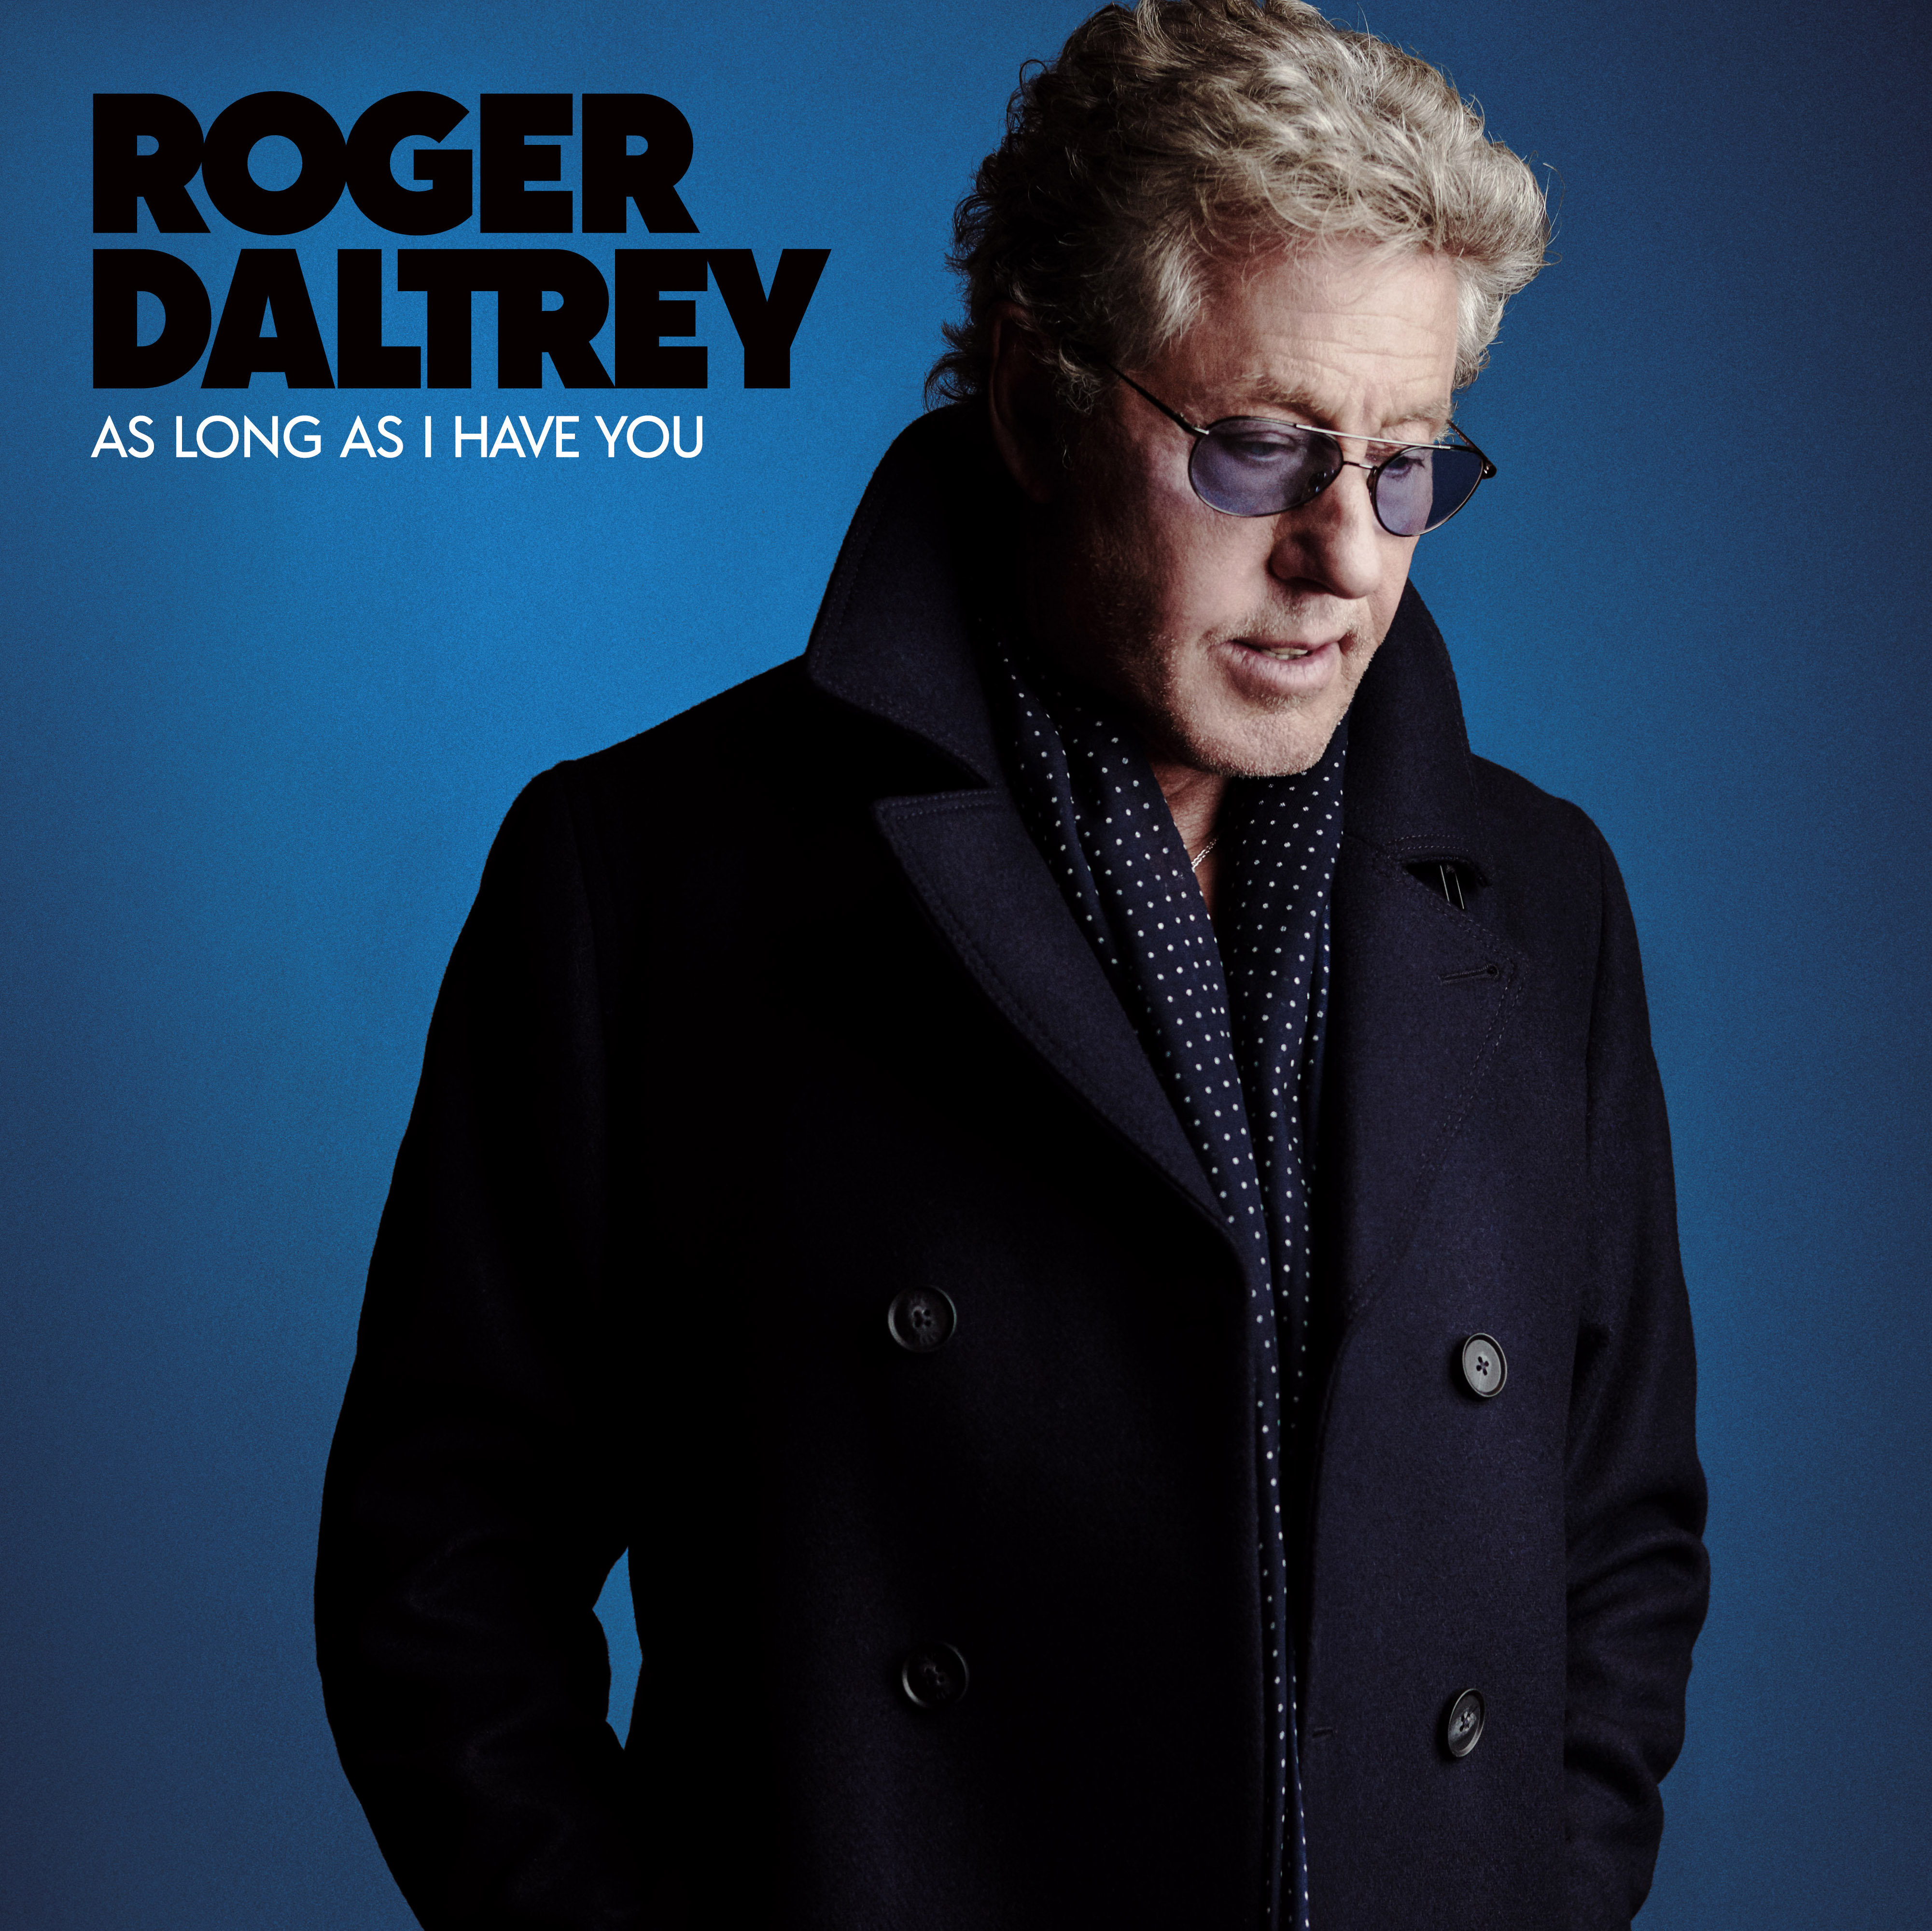 As (CD) Roger You Daltrey - Have I Long As -